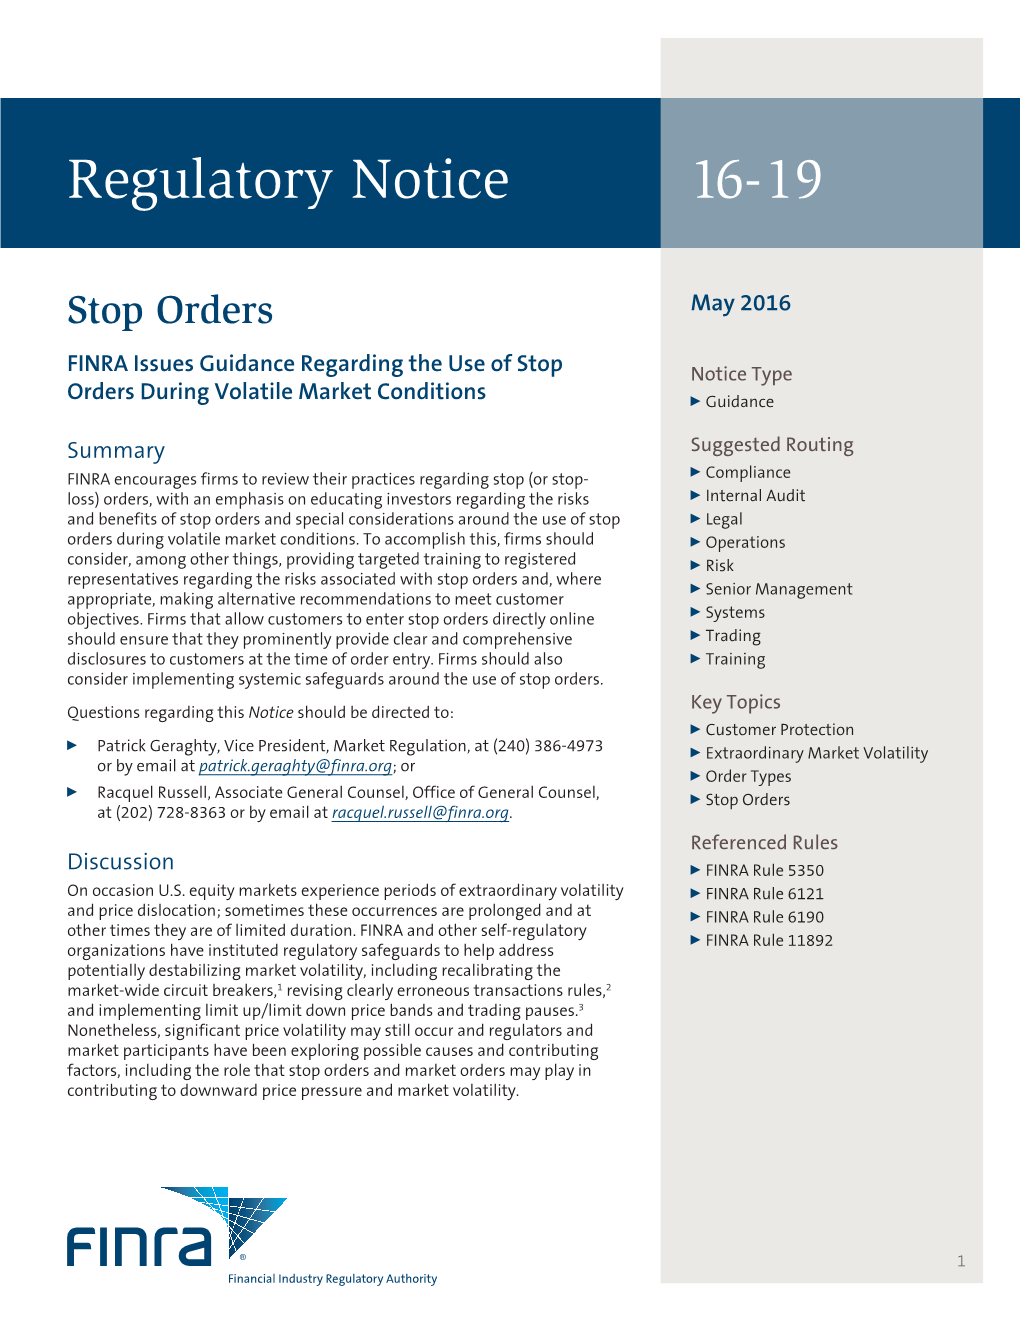 FINRA Regulatory Notice 16-19